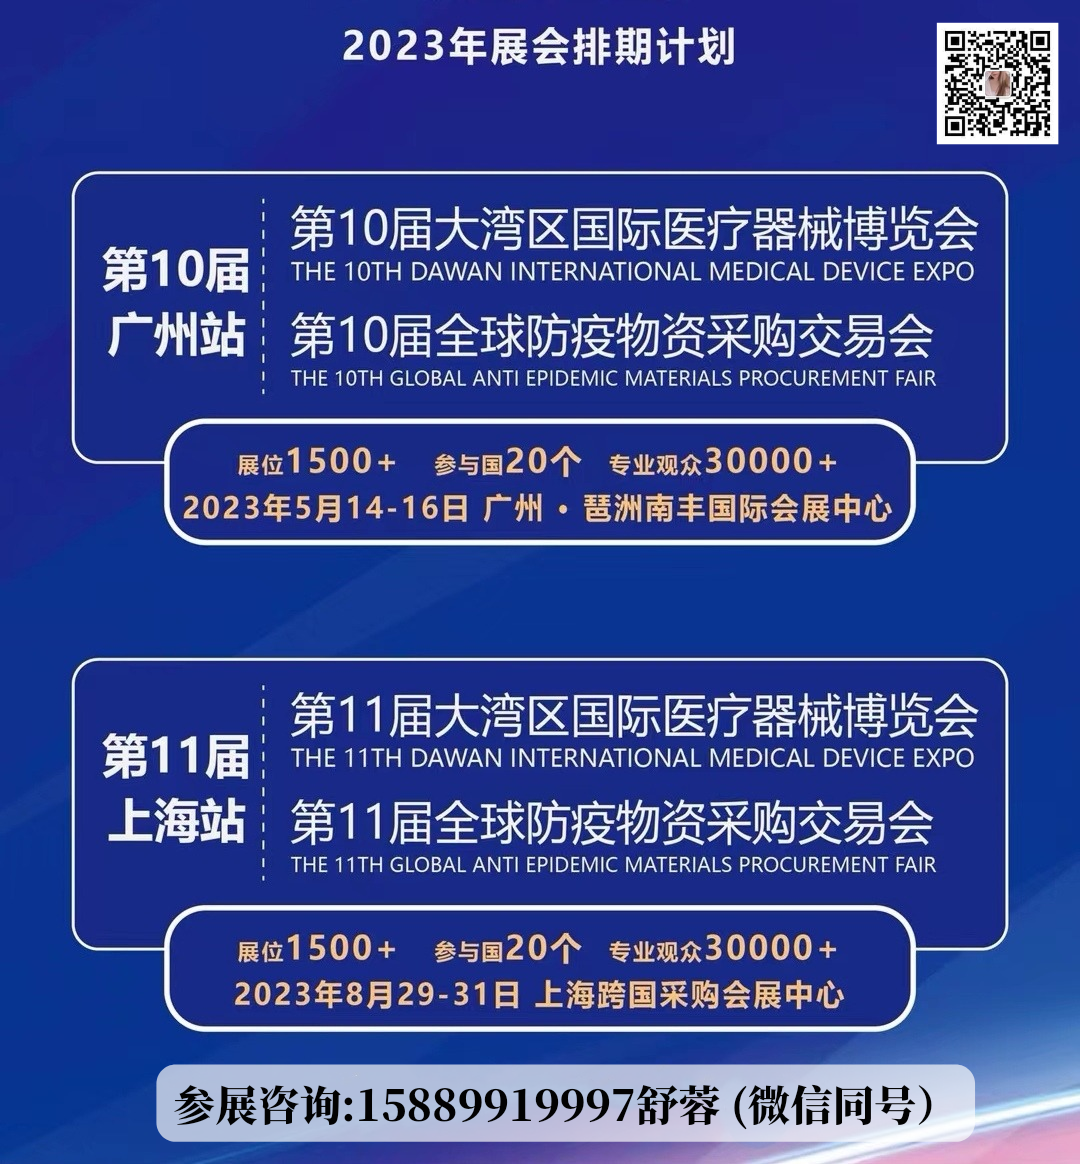 2023第11届防疫物资展览会2023第11届广州国际防护用品展览会